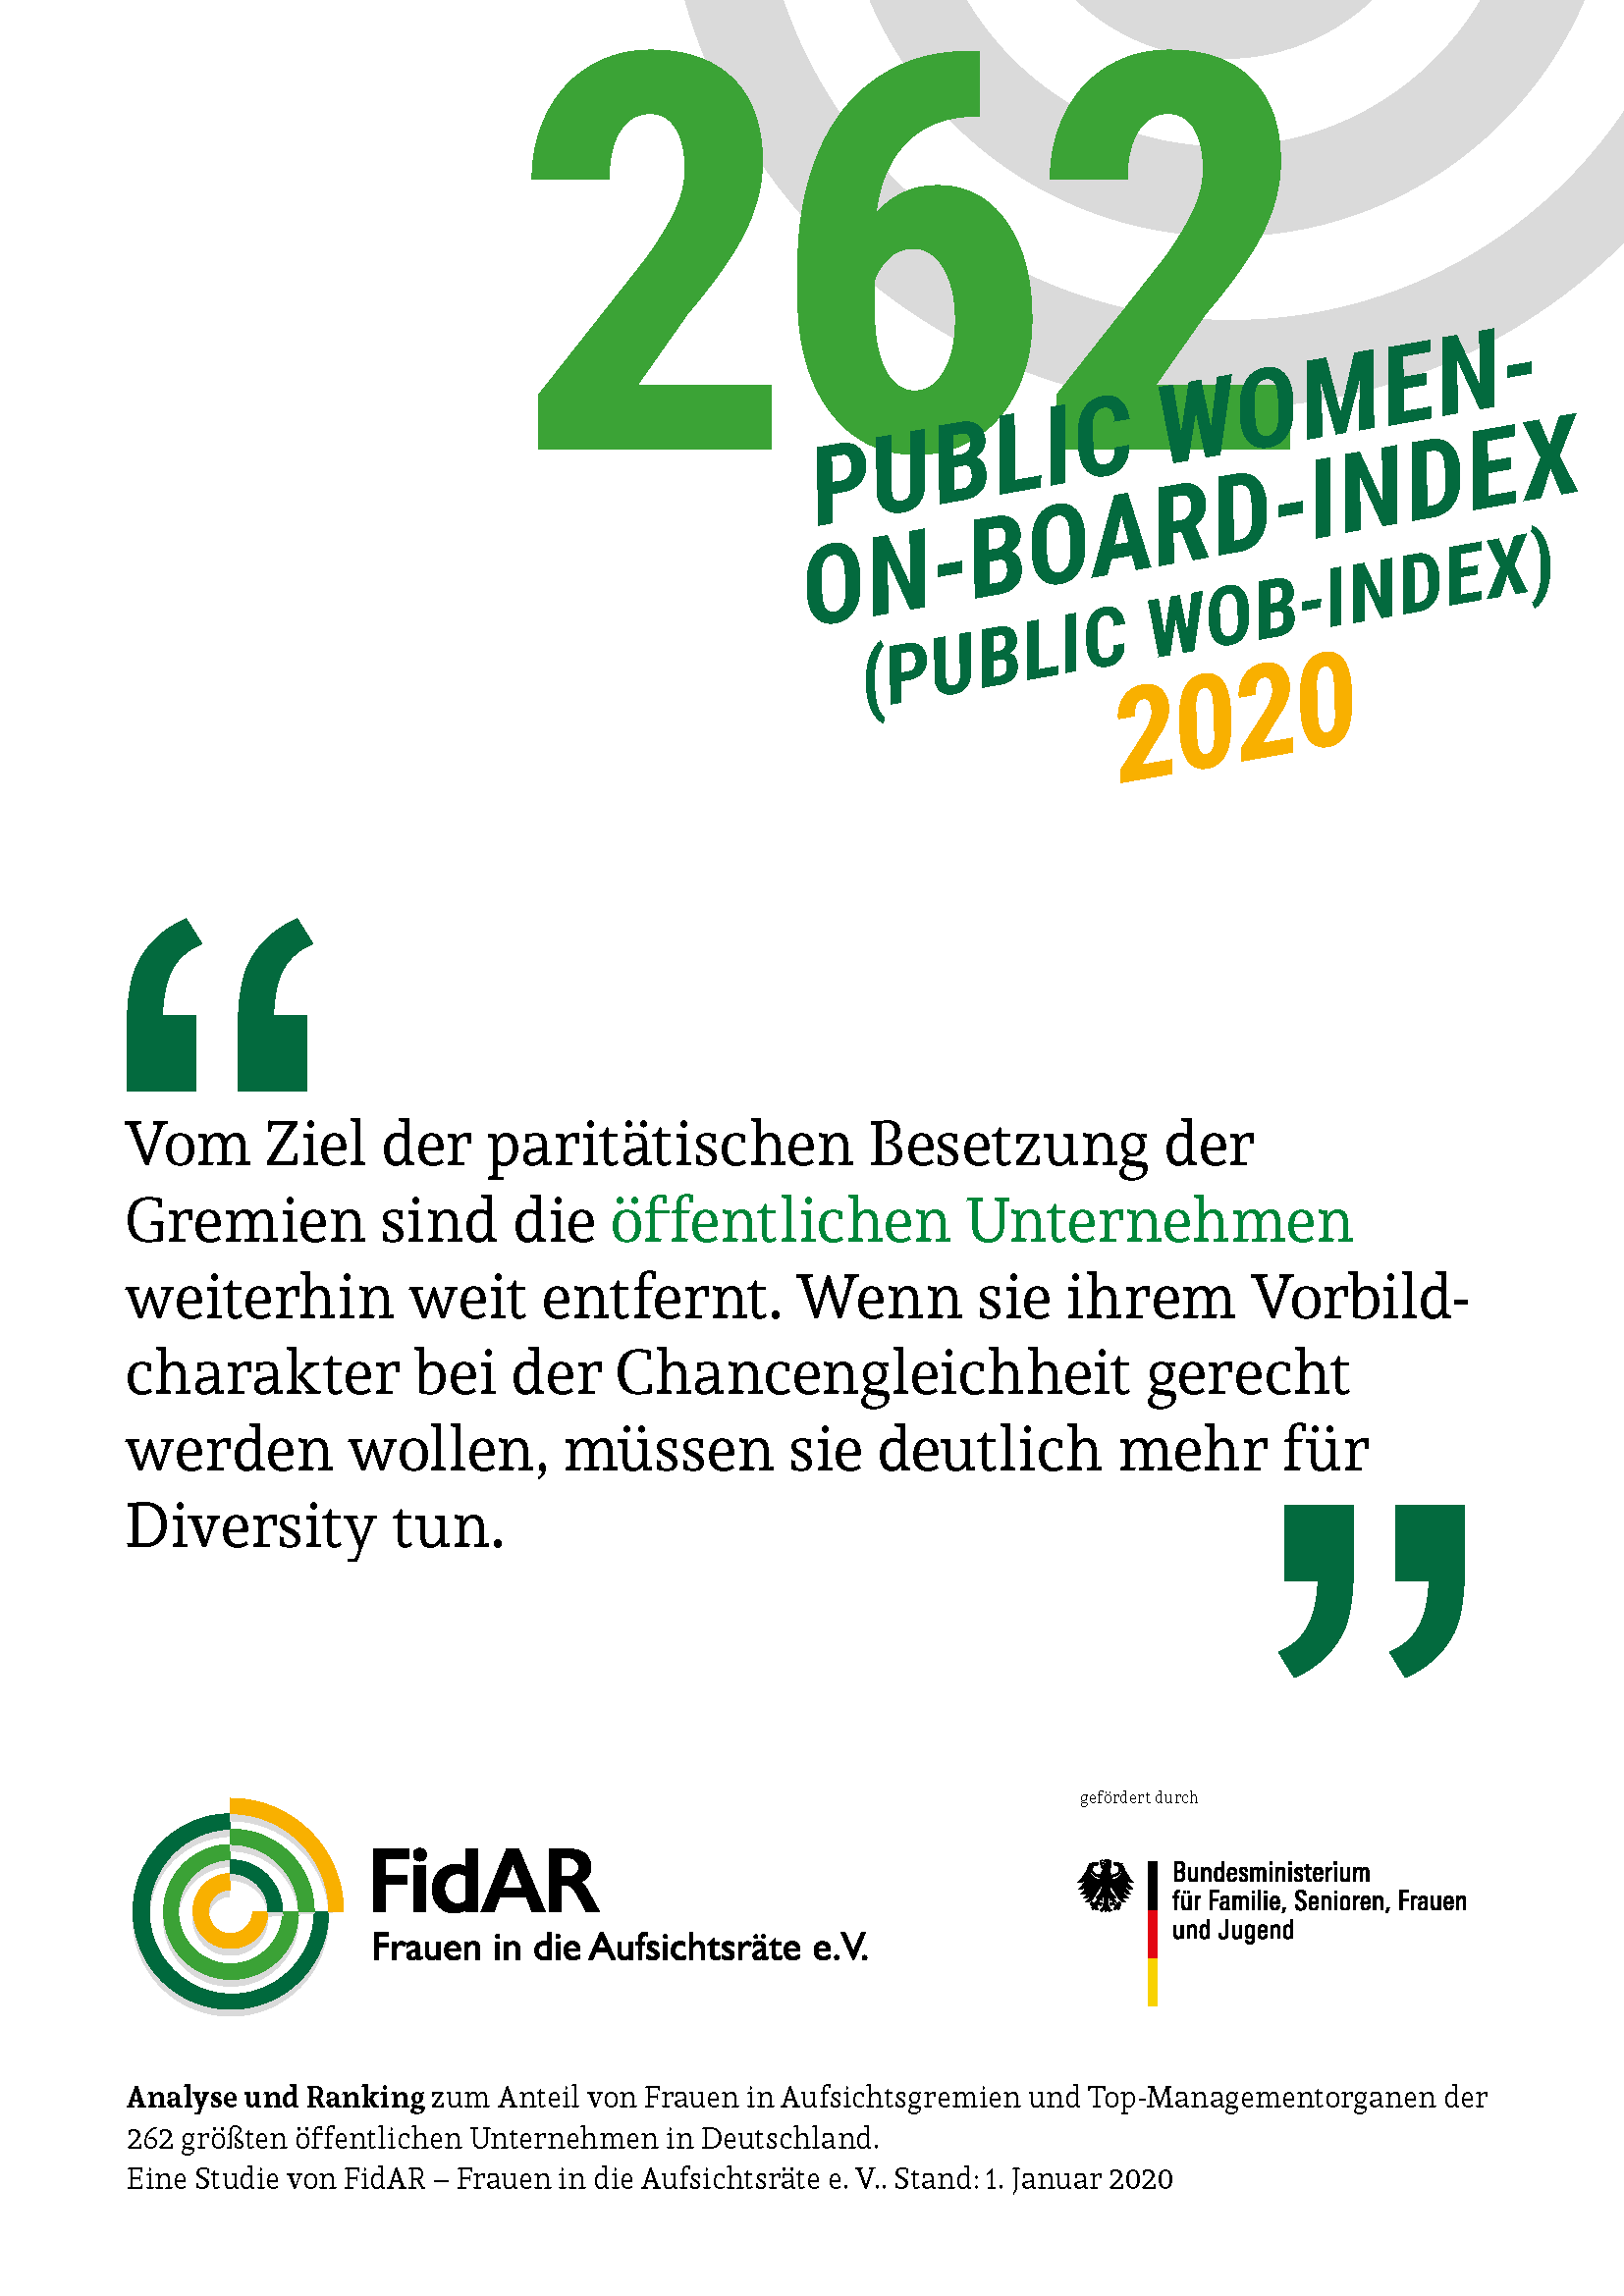 Public WoB-Index 2020